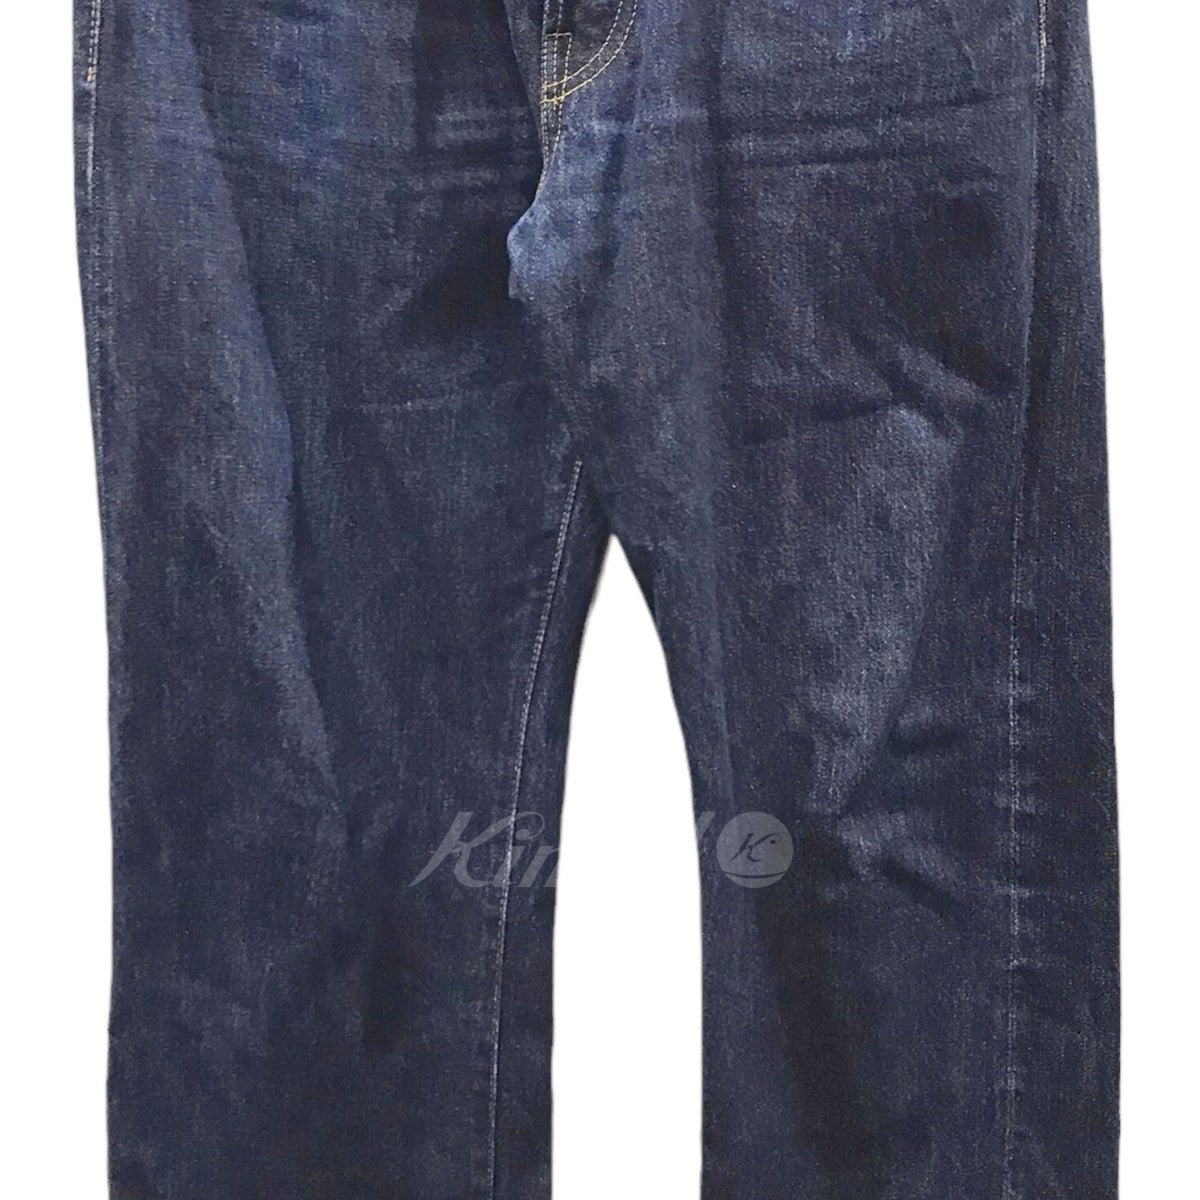 Levi’s Vintage Clothing(リーバイス ヴィンテージ クロージング) デニムパンツ 501XX 47年モデル 米国製  47501-0117